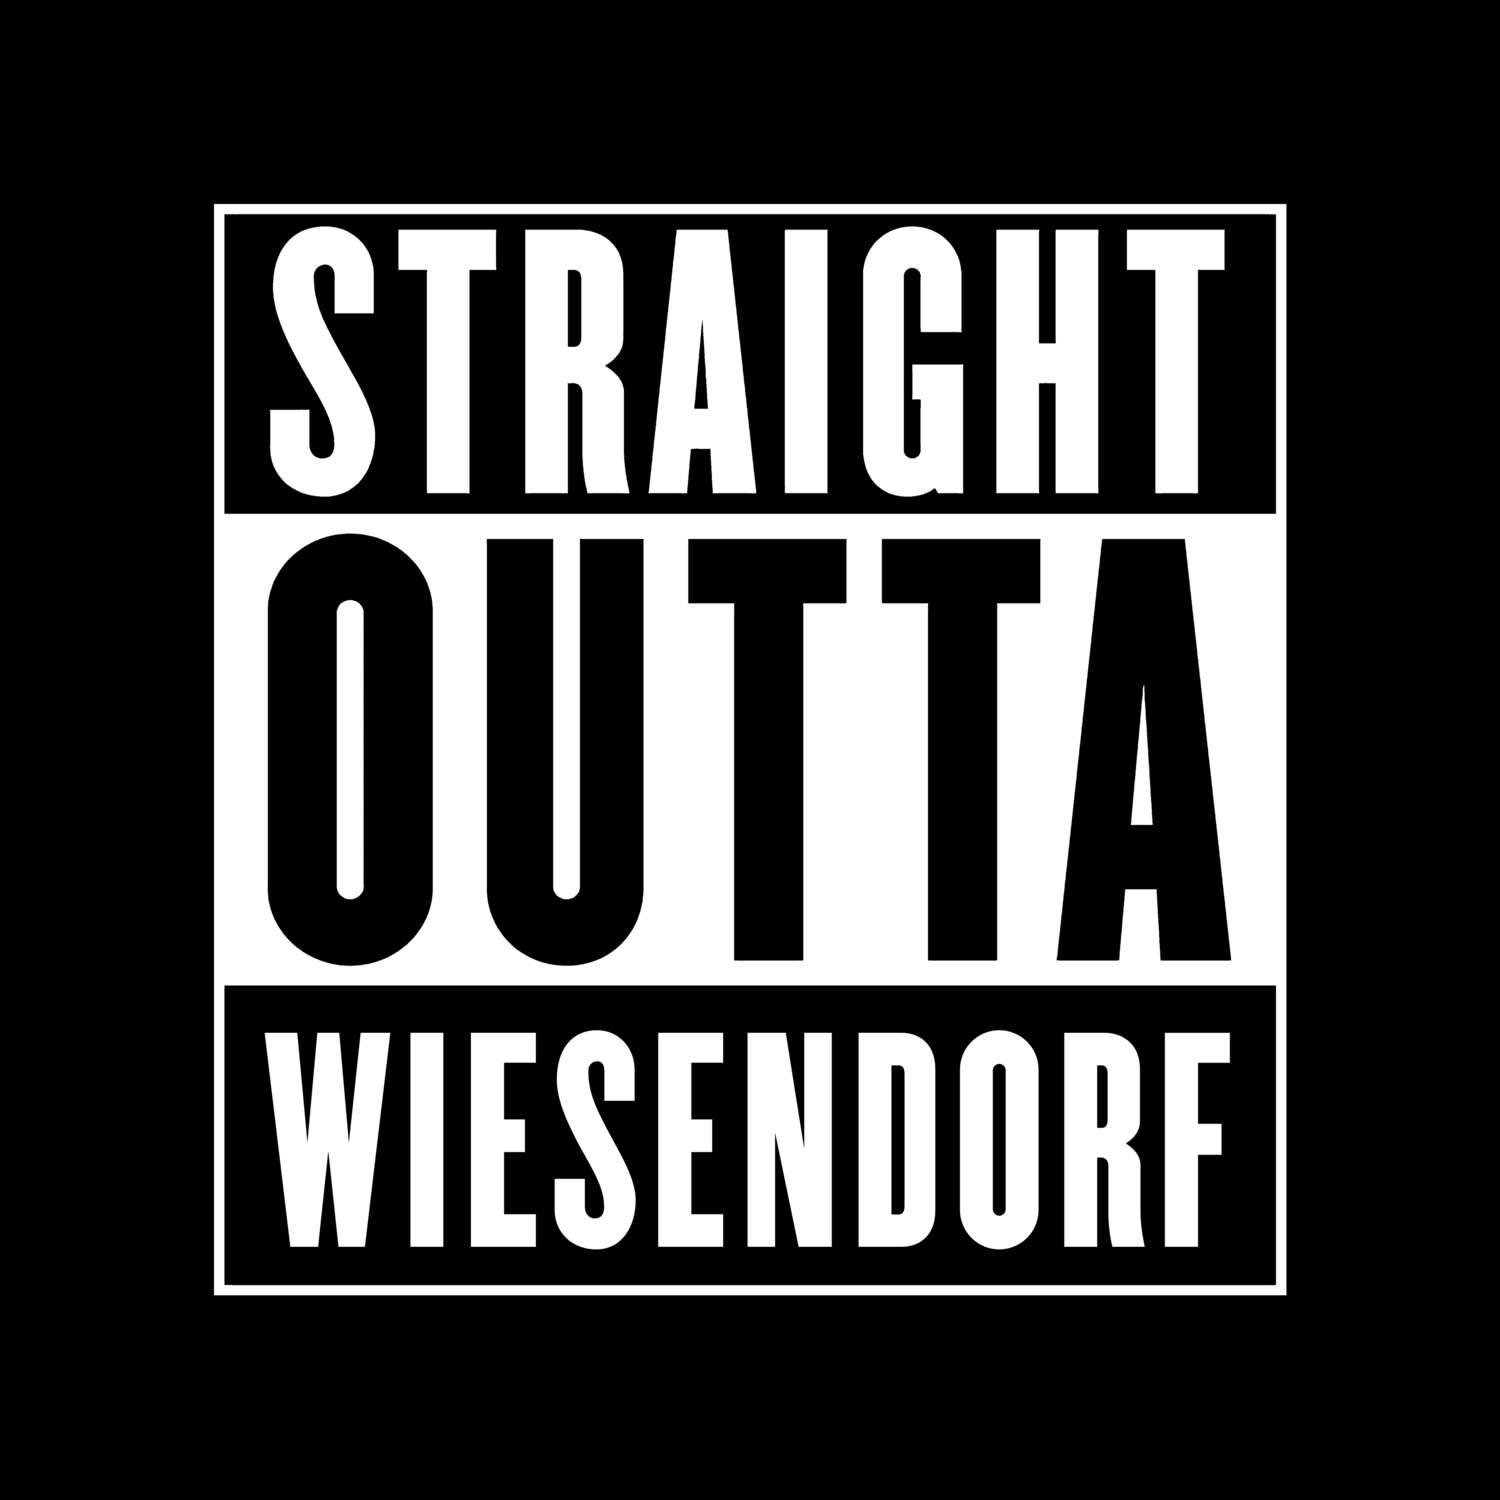 Wiesendorf T-Shirt »Straight Outta«